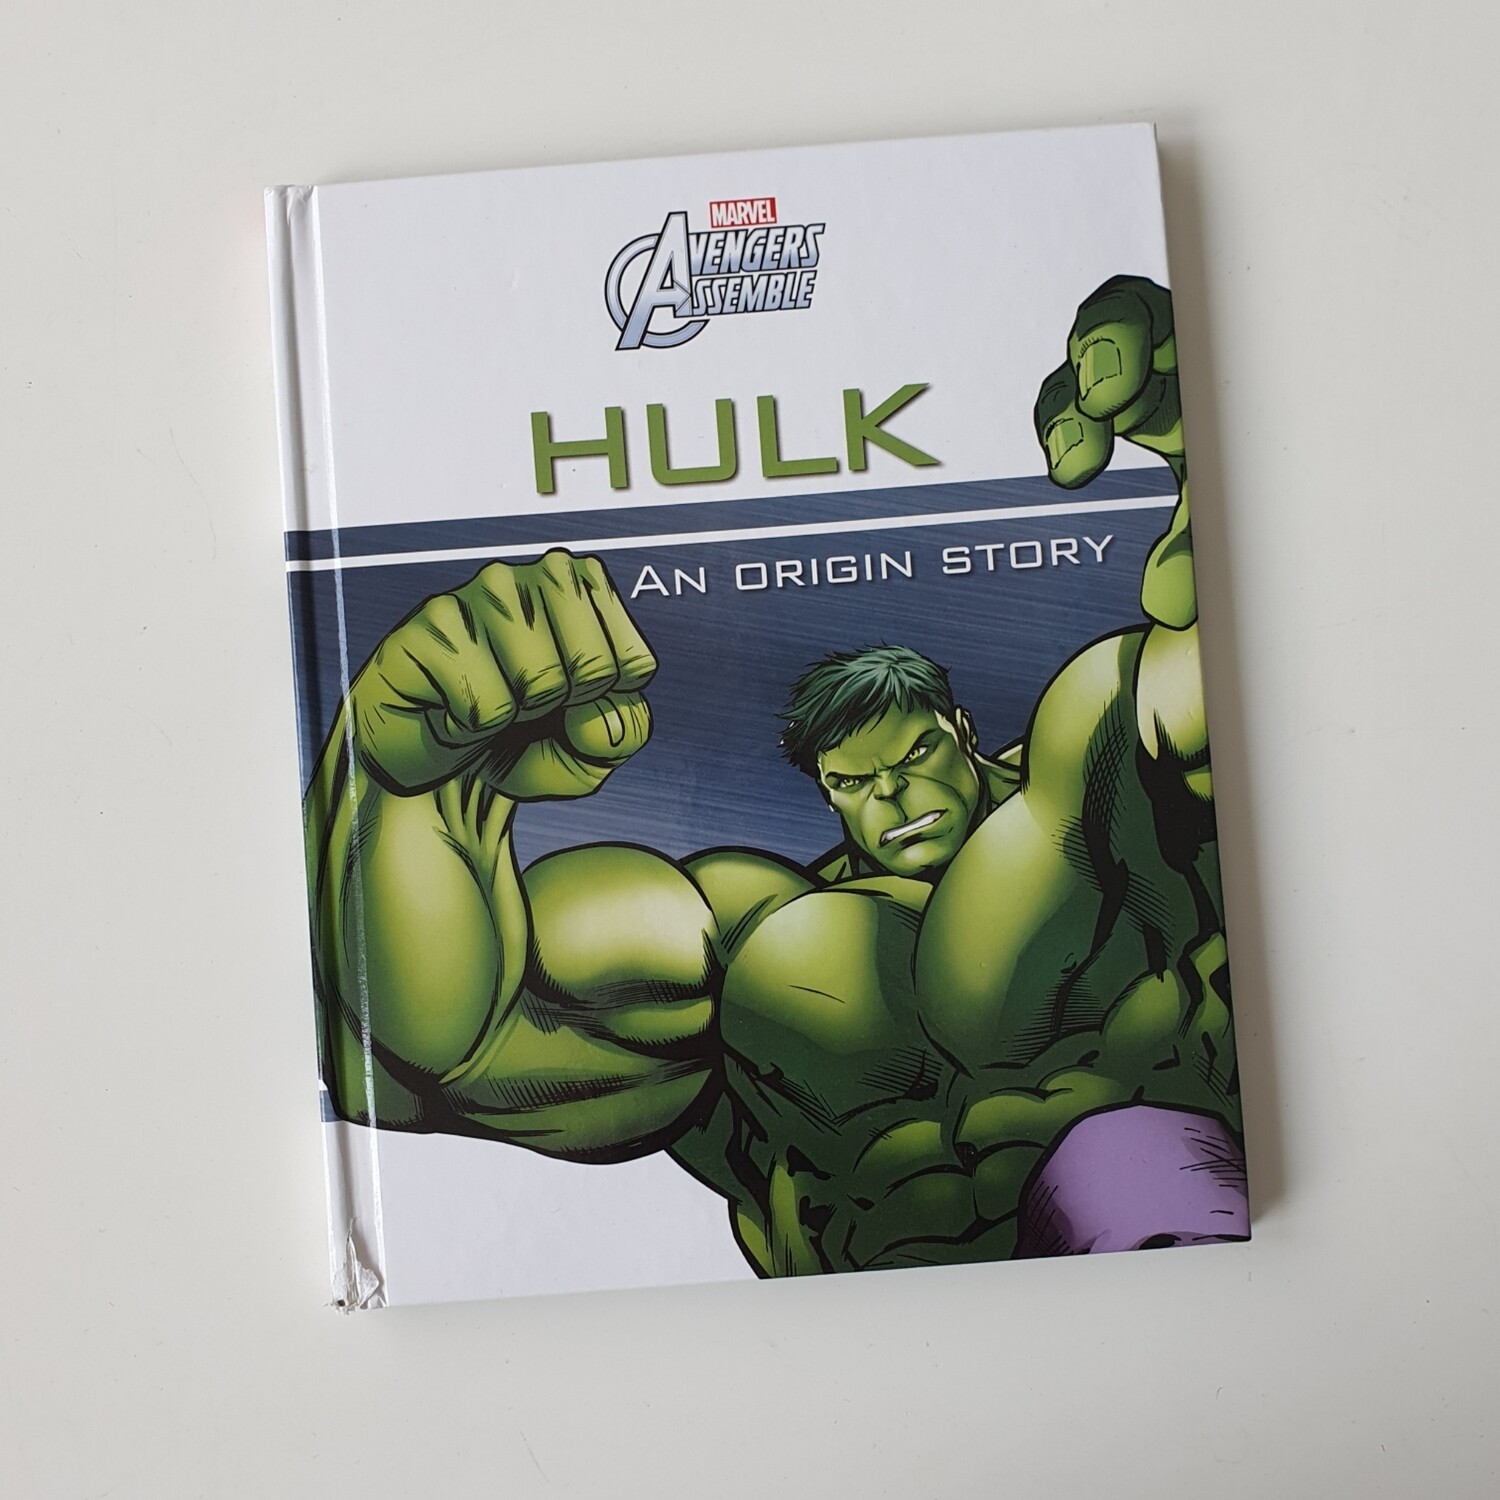 Hulk - Avengers Assemble, Marvel